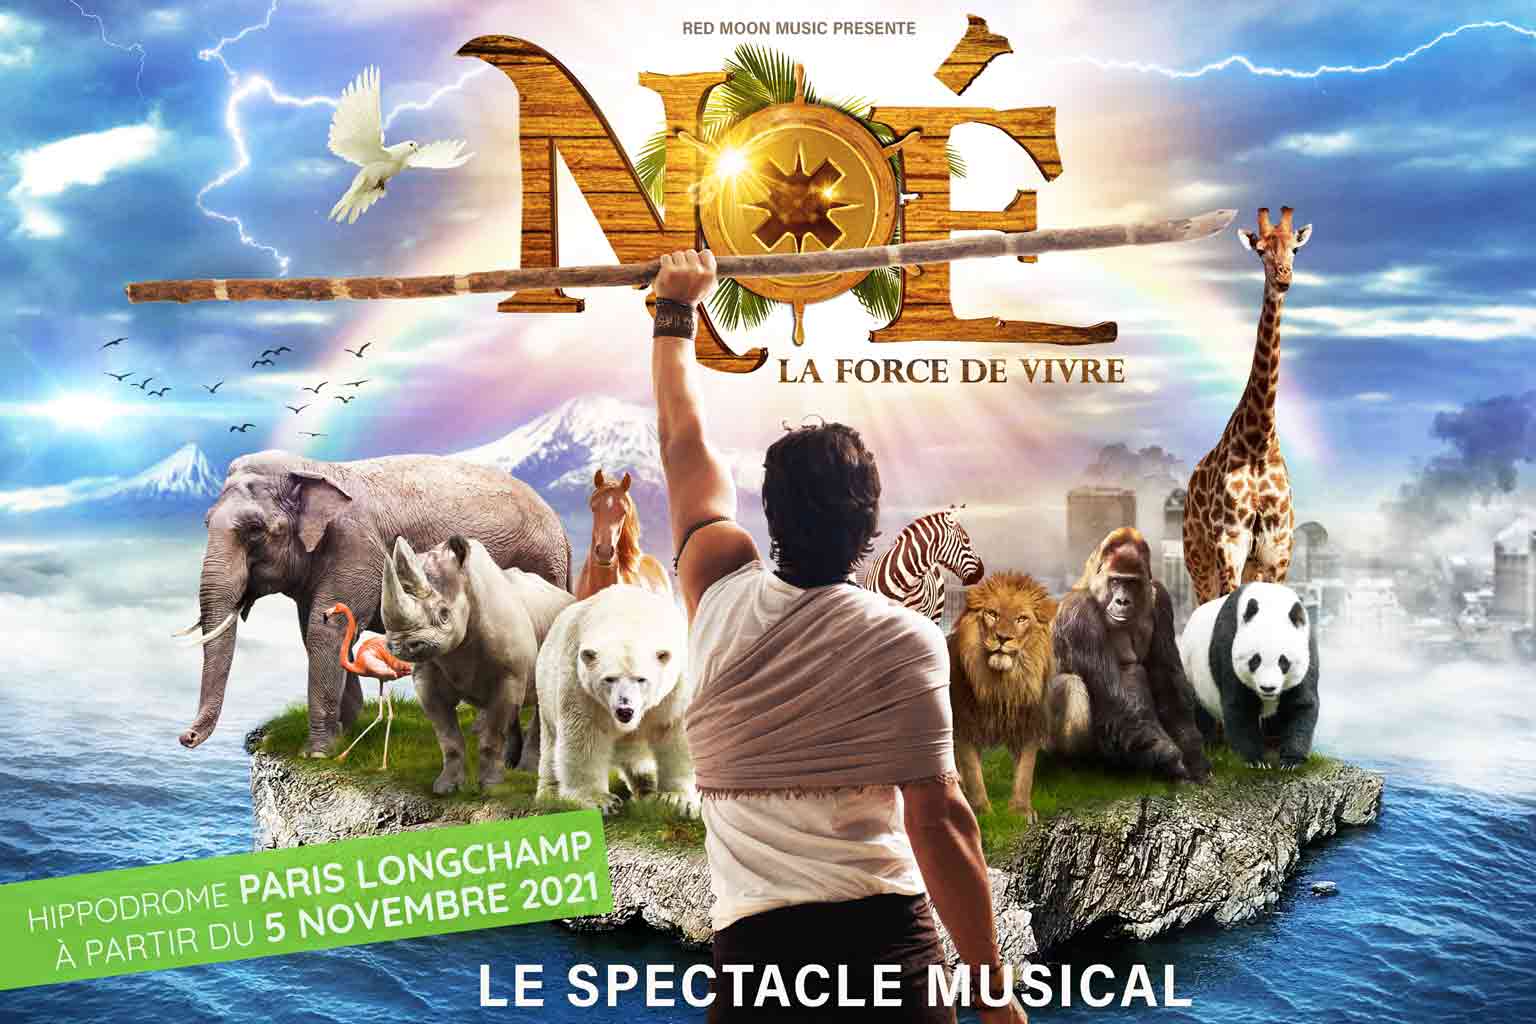 Noé la force de vivre, le spectacle musical à l'Hippodrome Paris Longchamp